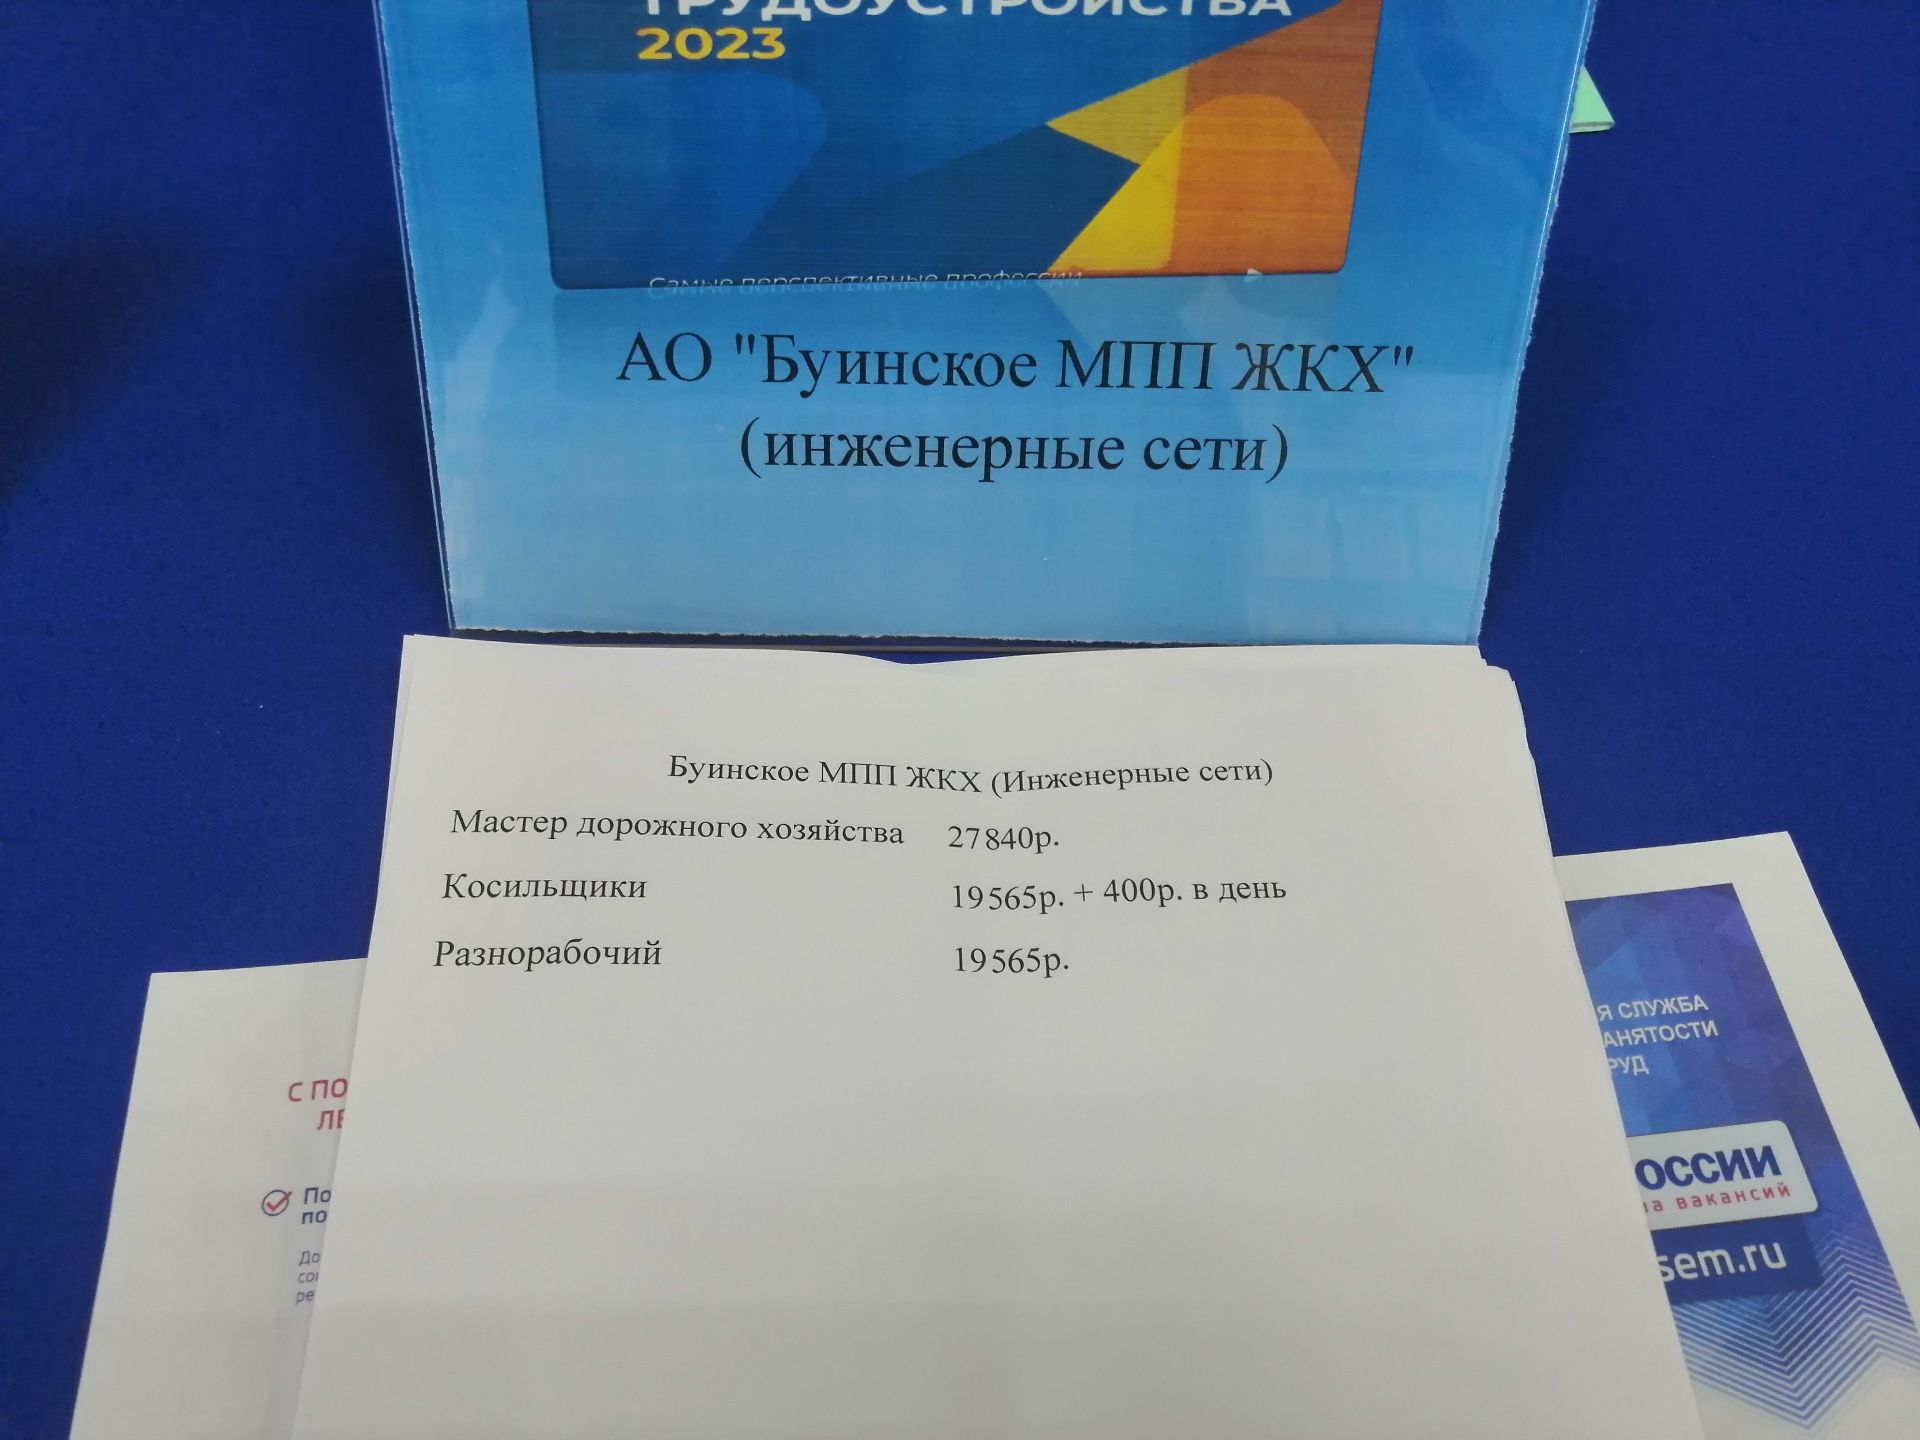 Сегодня в Буинске предлагали вакансии с заработной платой 60 тысяч рублей (фото, видео)